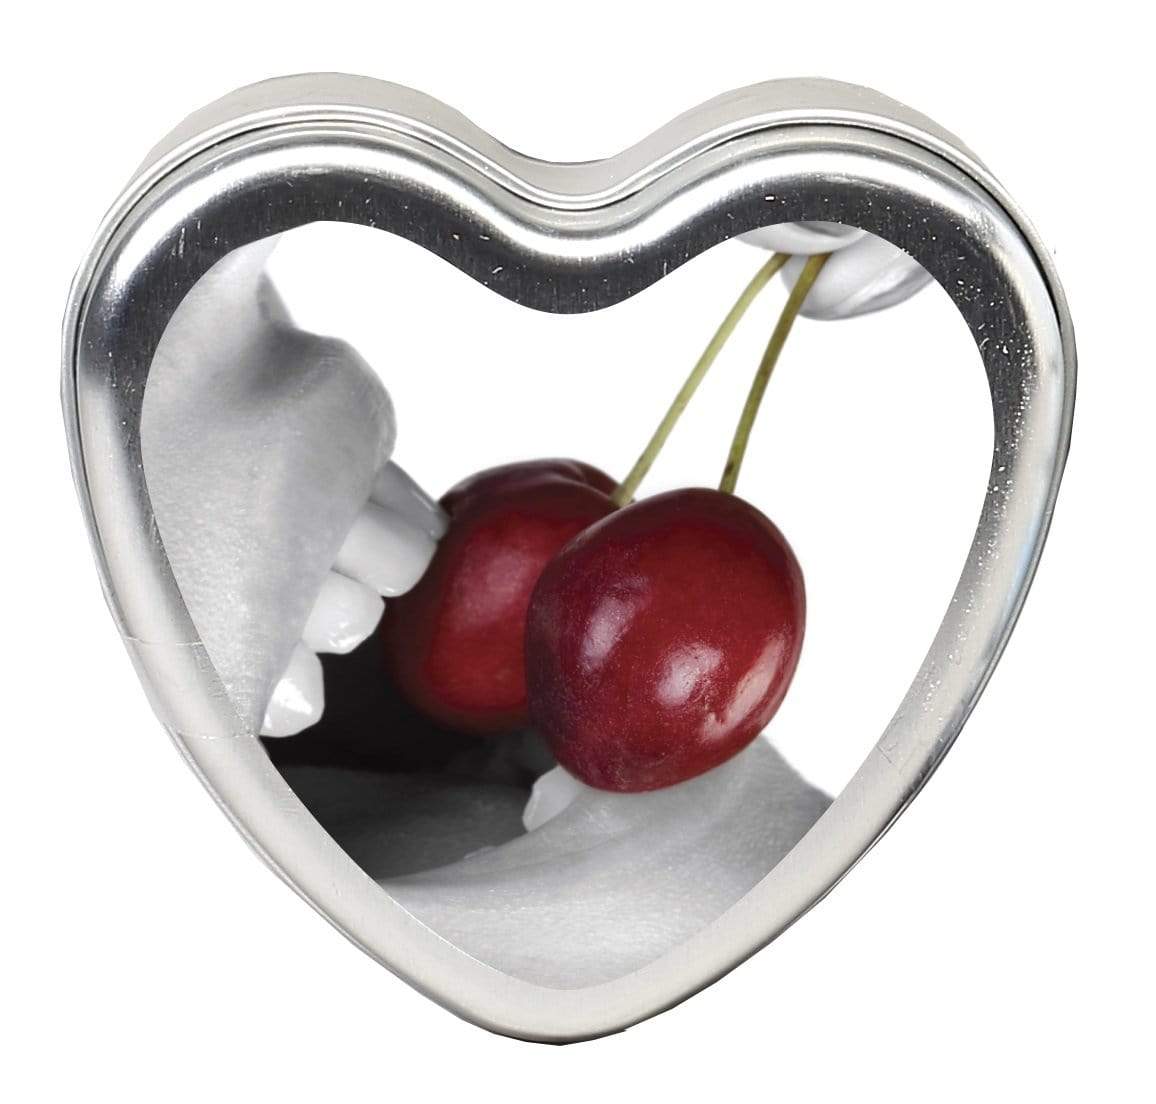 edible heart candle cherry 4 oz